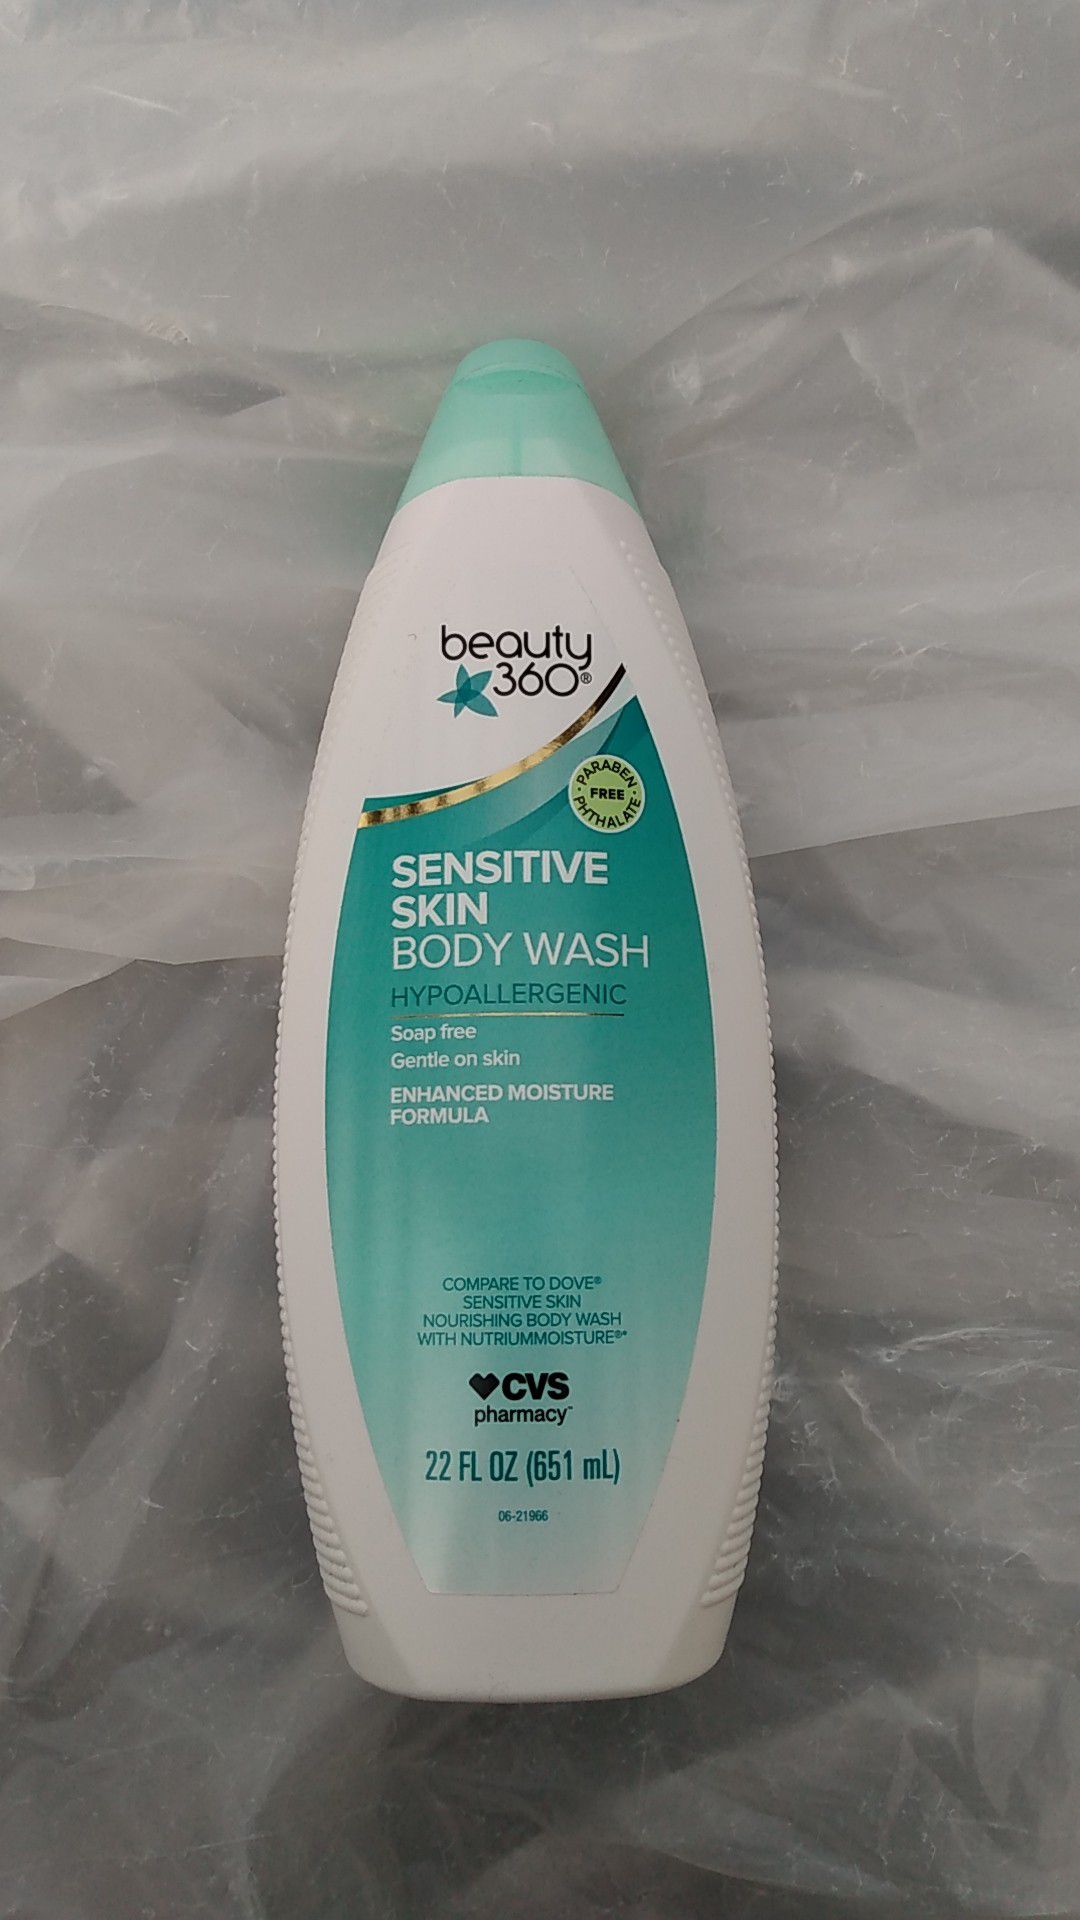 Beauty 360 body wash